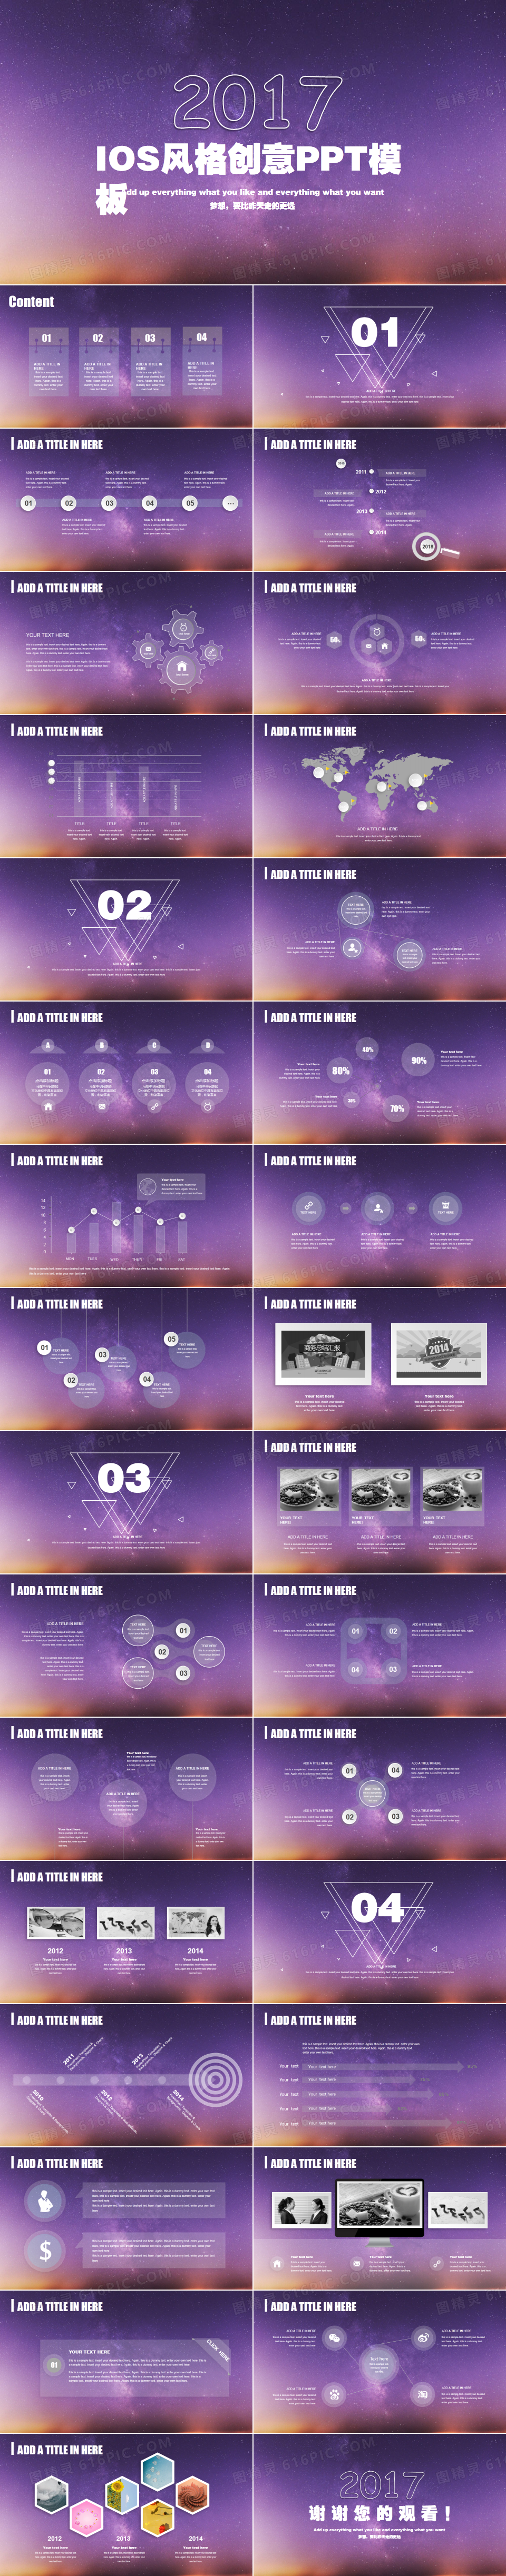 IOS紫色风格通用企业宣传项目计划产品展示ppt模板